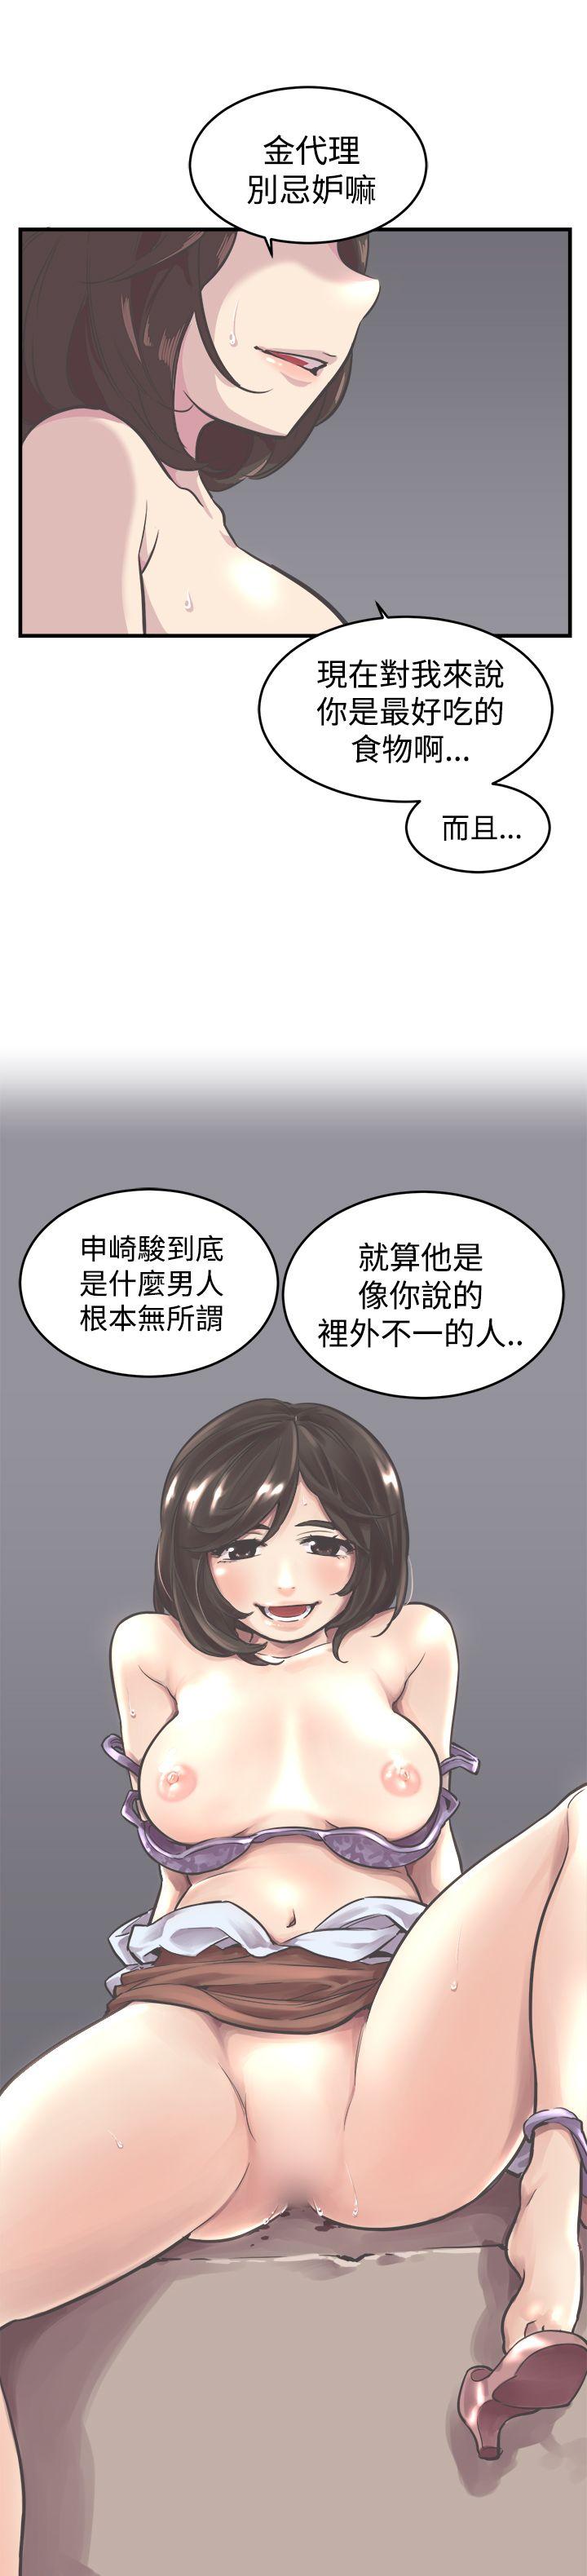 韩国污漫画 青春男女(完結) 第6话 23